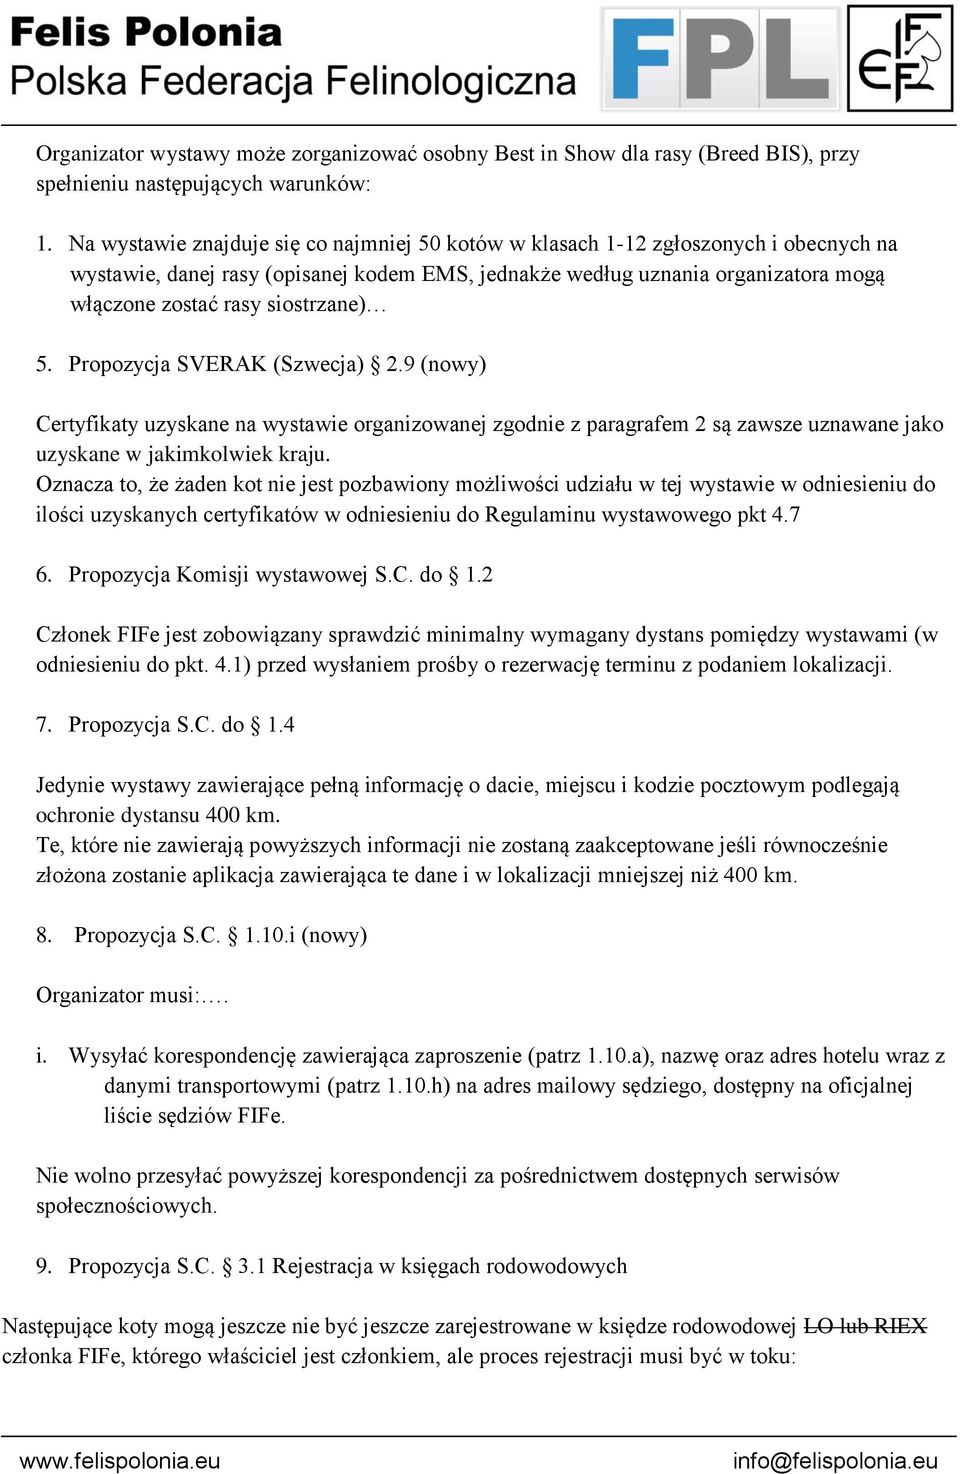 siostrzane) 5. Propozycja SVERAK (Szwecja) 2.9 (nowy) Certyfikaty uzyskane na wystawie organizowanej zgodnie z paragrafem 2 są zawsze uznawane jako uzyskane w jakimkolwiek kraju.